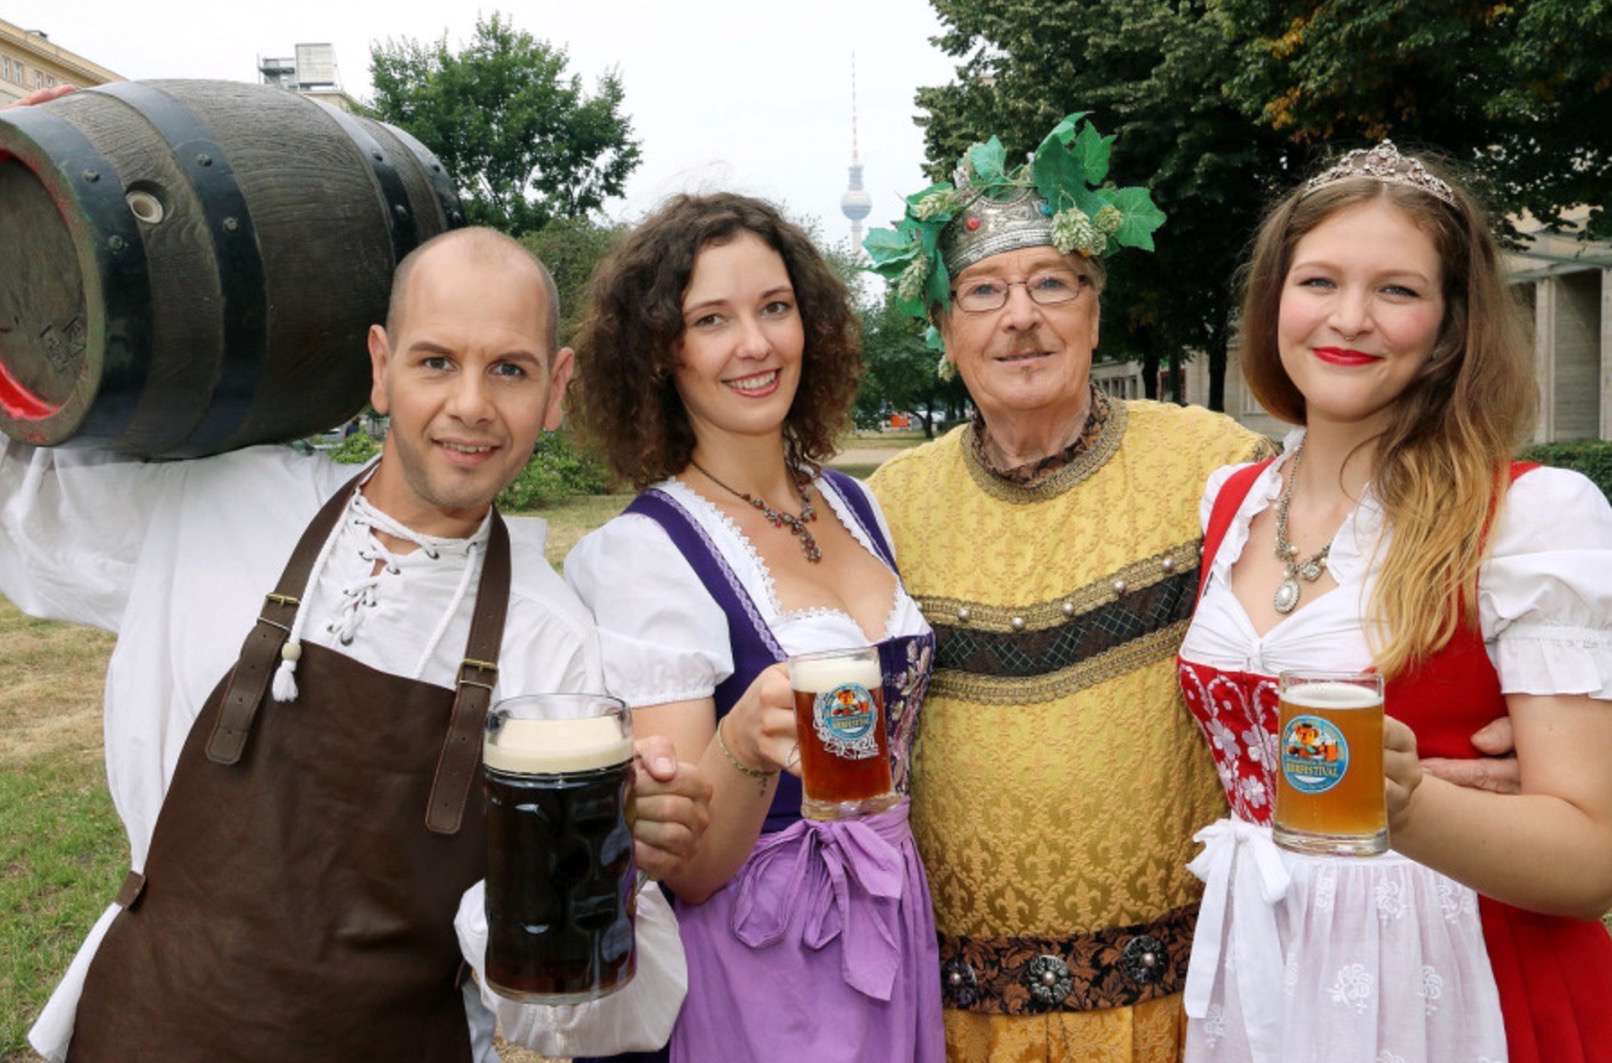 Prost! Bierfestival zum internationalen Tag des Bieres